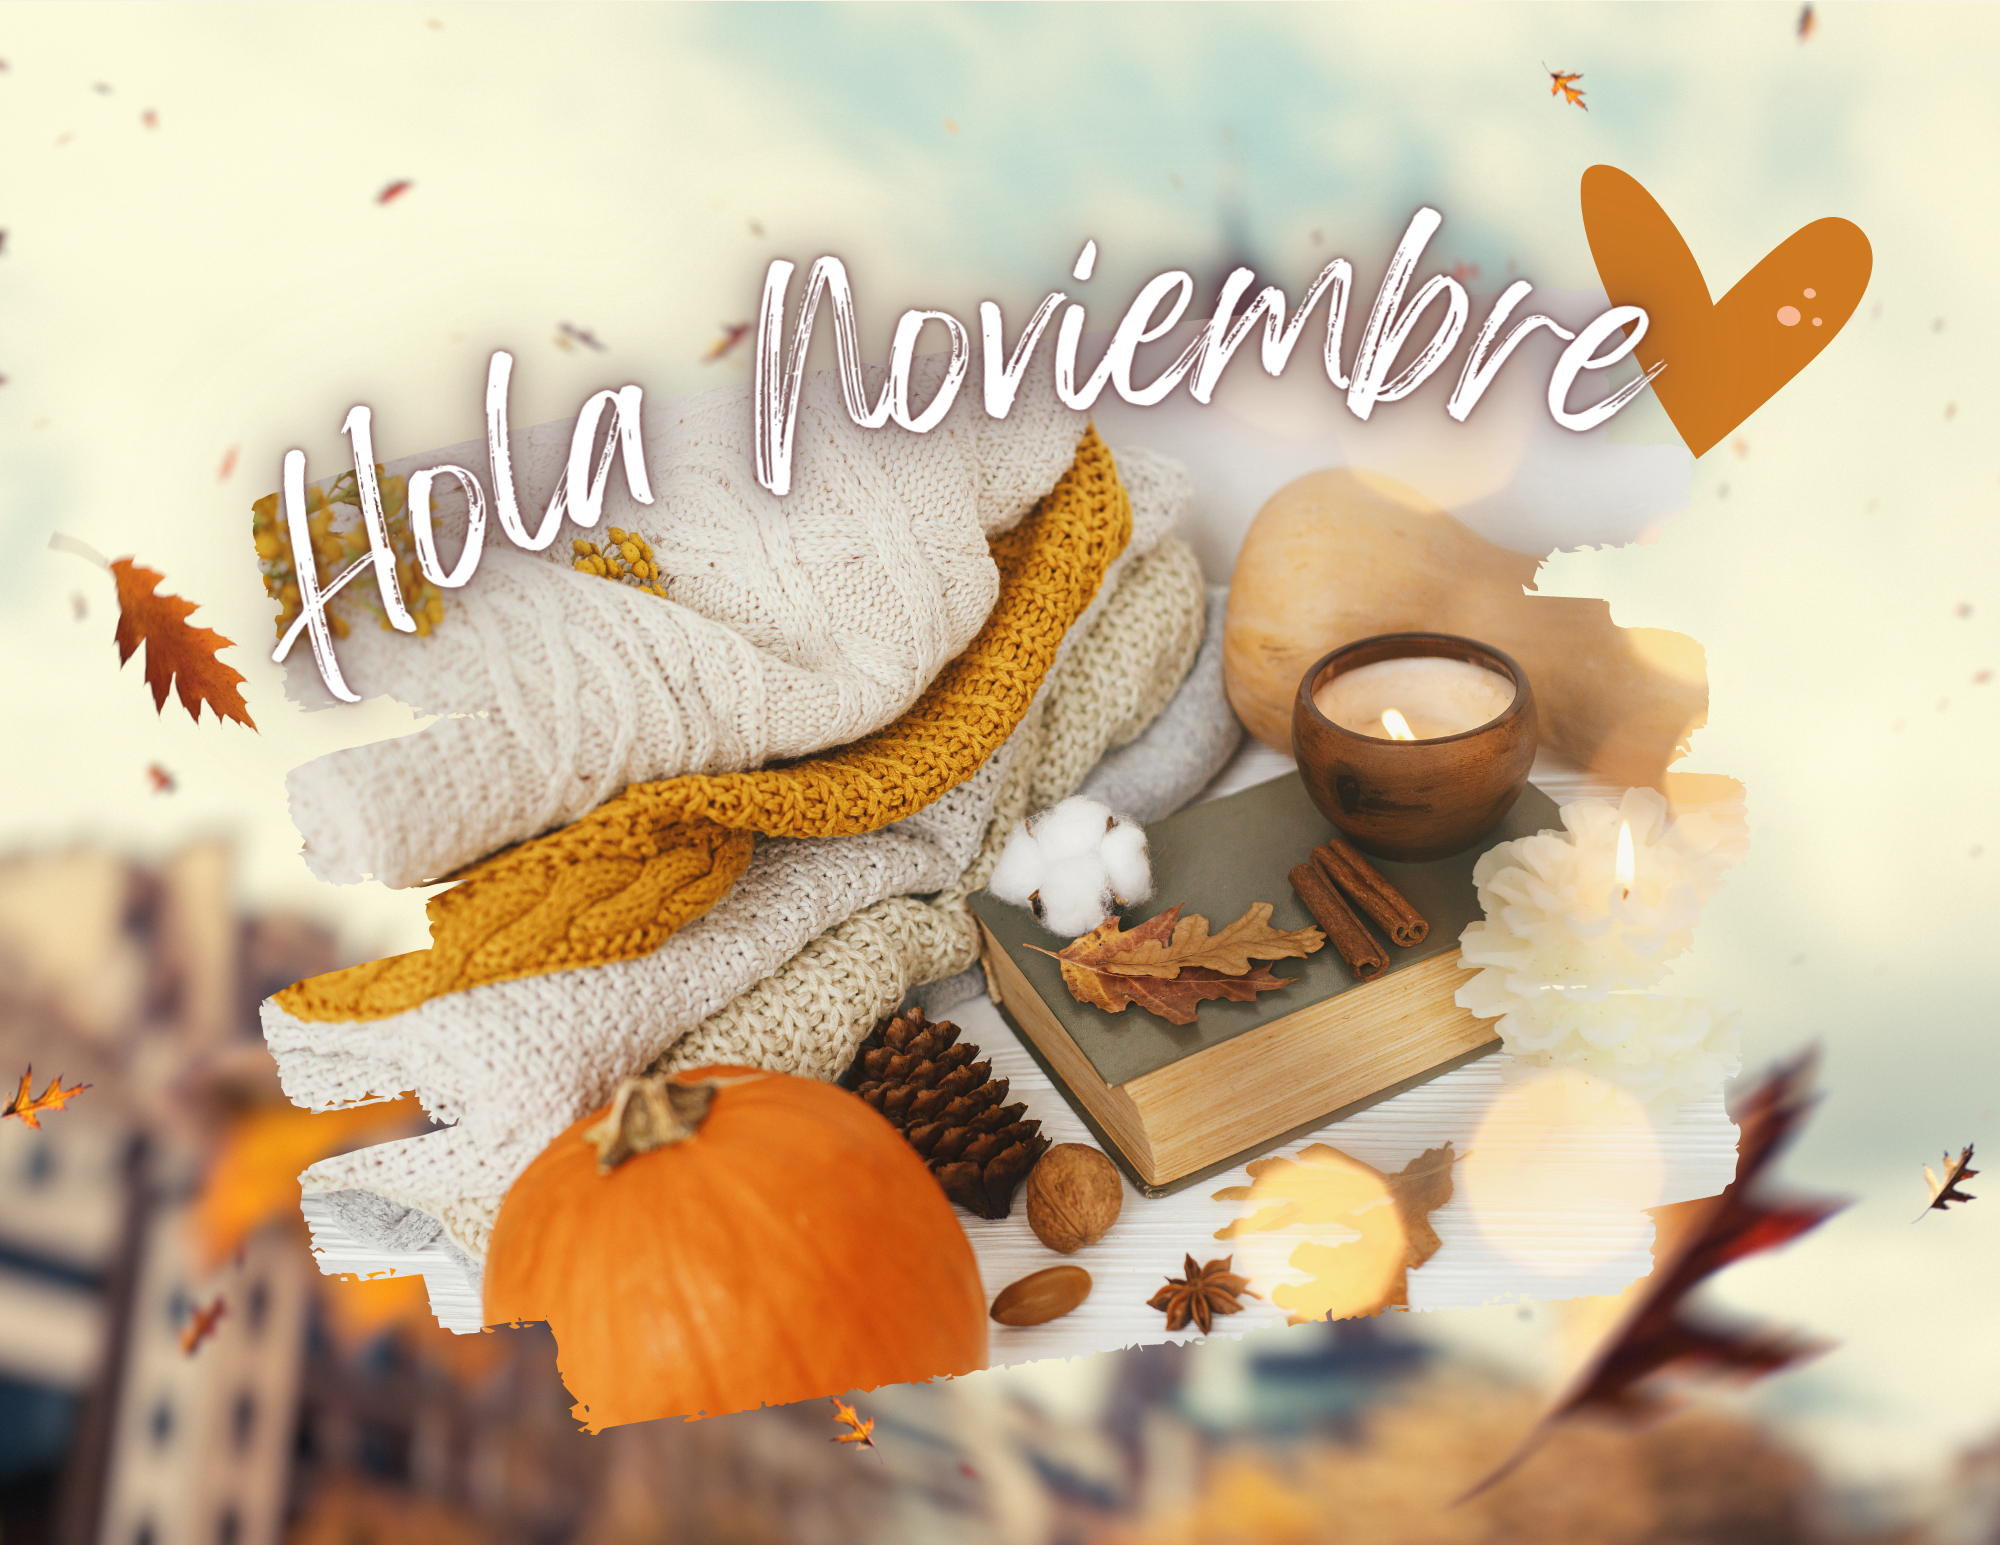 Representaciones festivas y artísticas de la llegada de noviembre.
